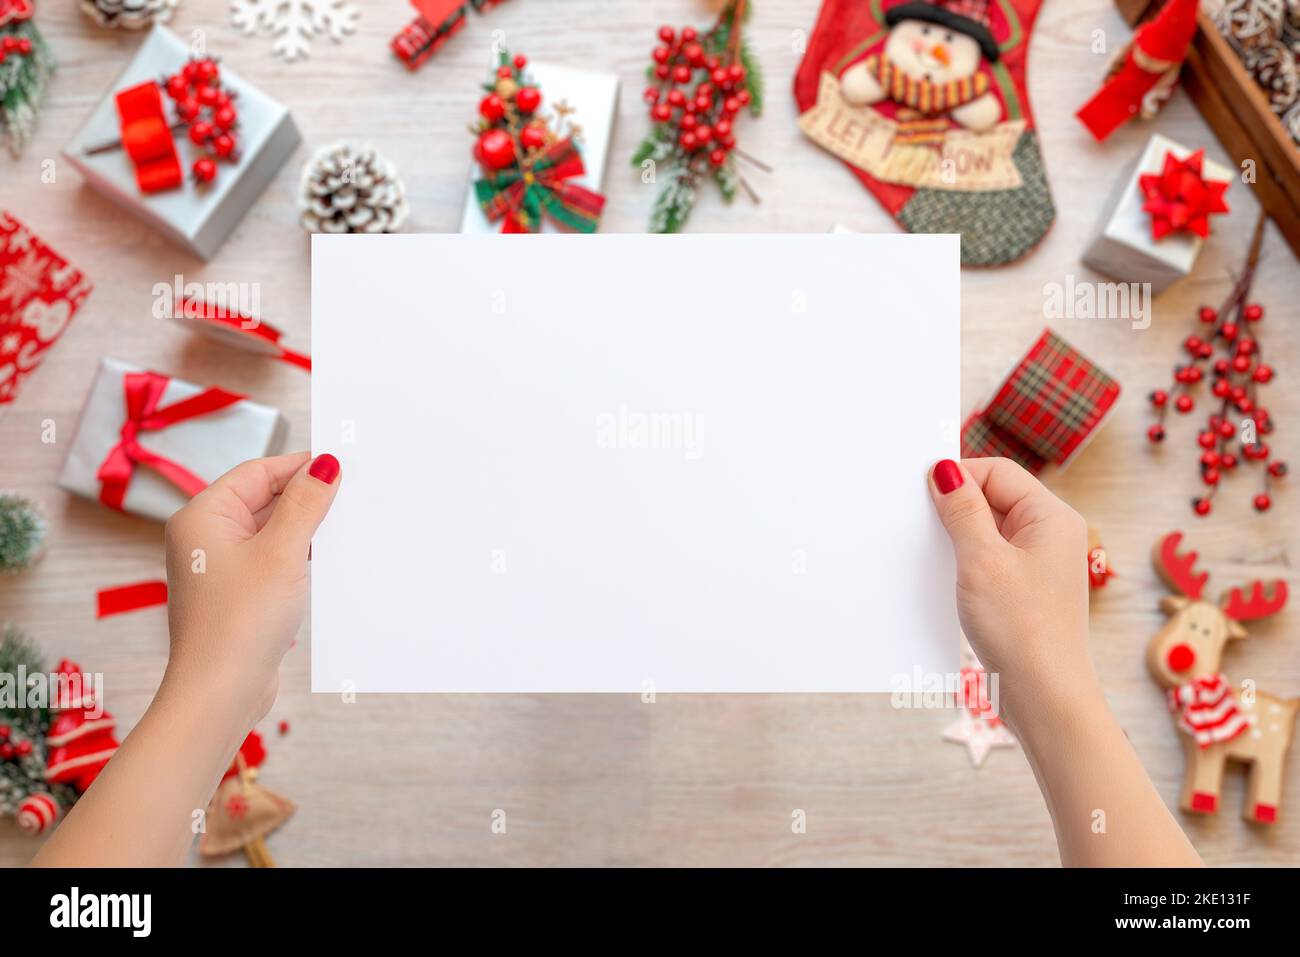 Mujer manos sosteniendo una hoja de papel en blanco para añadir texto de tarjeta de felicitación. Escena de Navidad con un montón de regalos y decoraciones sobre una mesa de madera Foto de stock